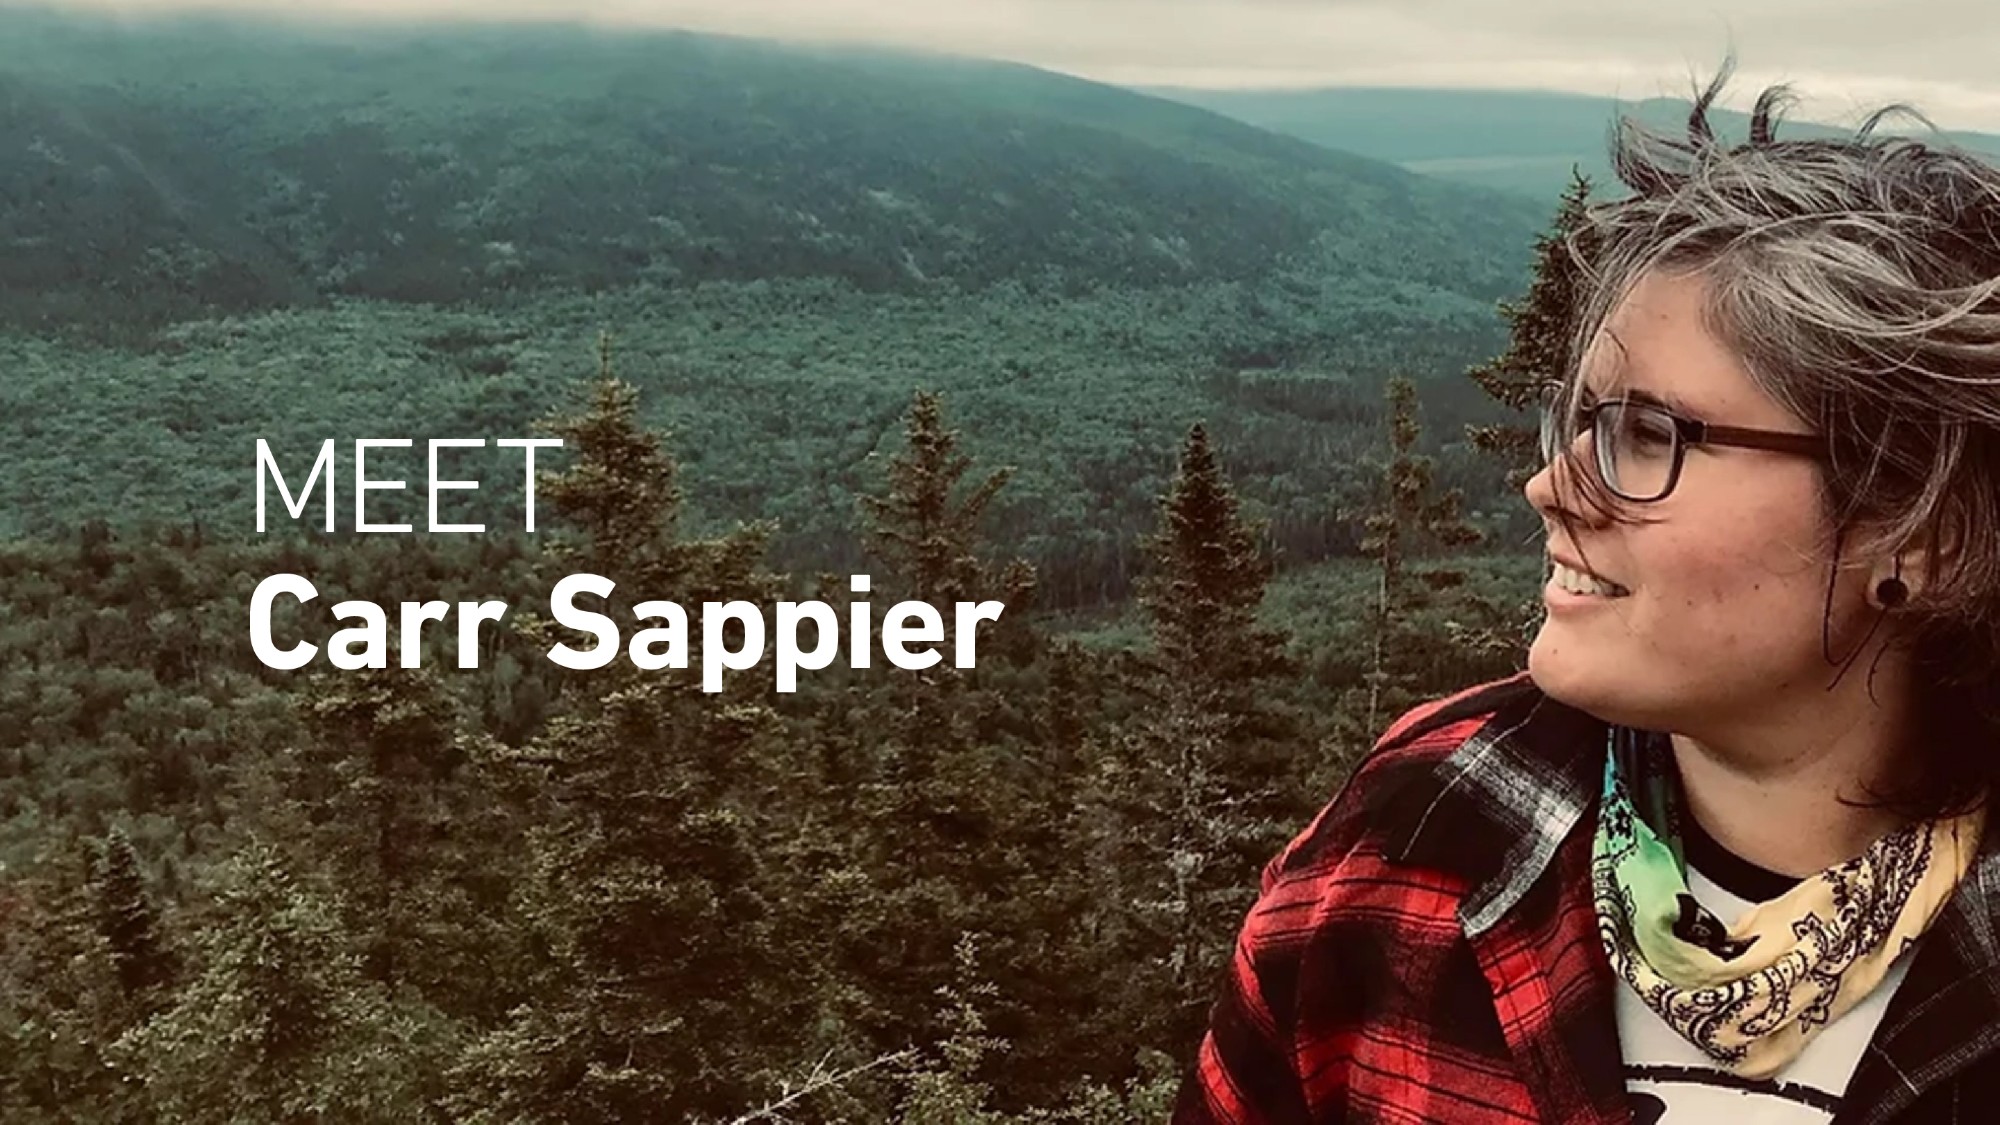 Meet Carr Sappier